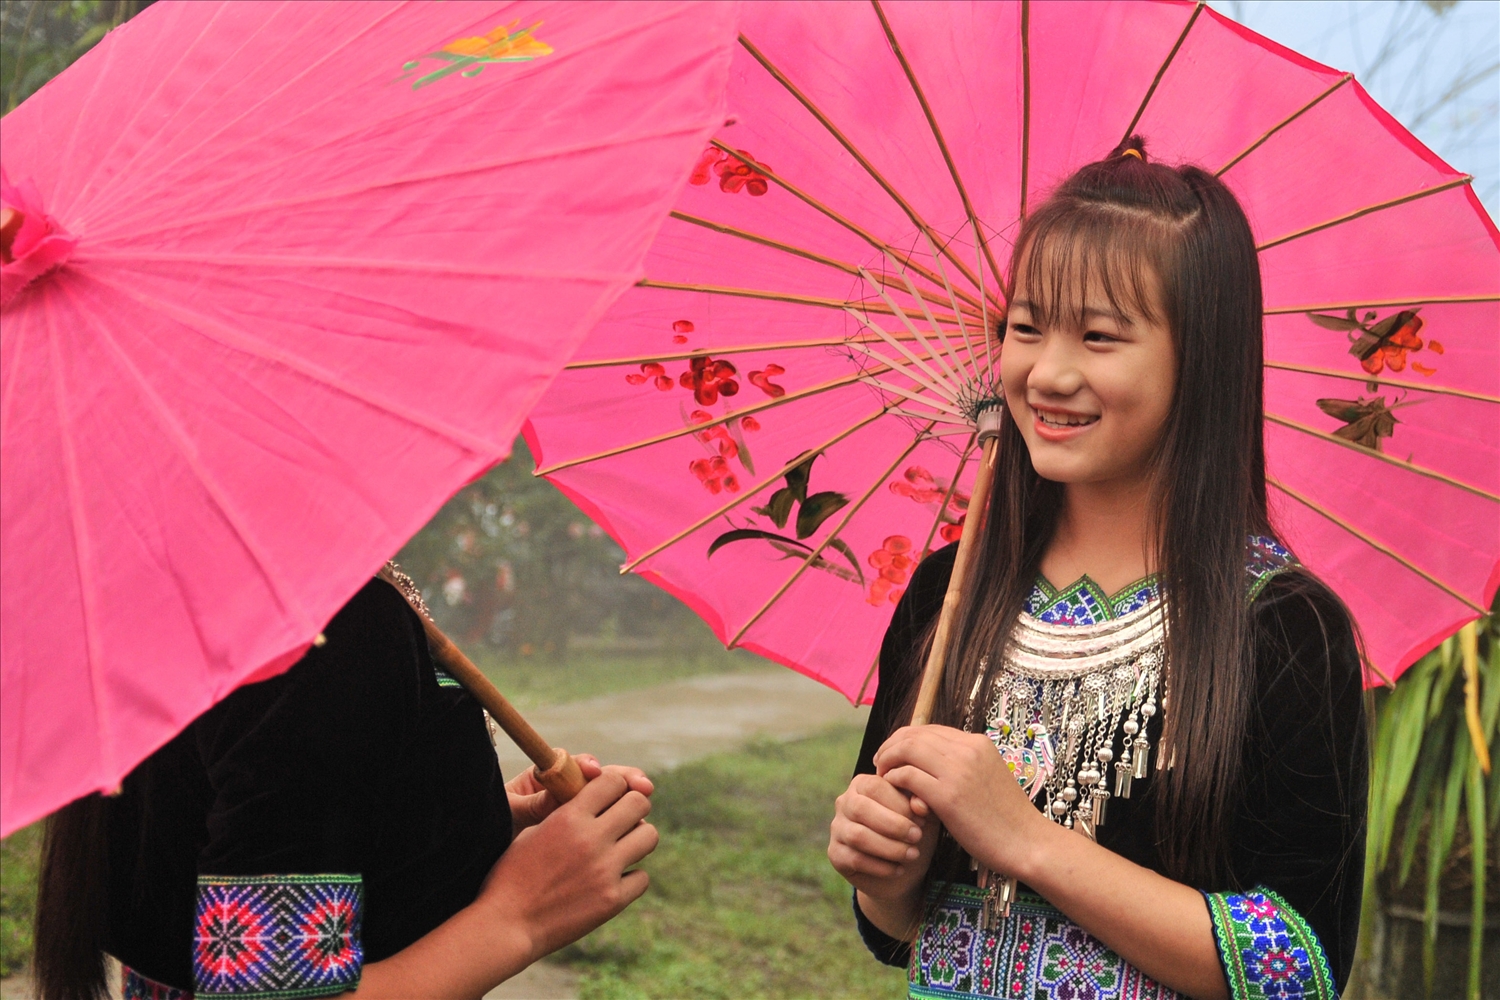 Áo thổ cẩm kèm trang sức lấp lánh và chiếc ô cầm tay là hình ảnh đặc trưng chân dung các thiếu nữ dân tộc Mông nơi vùng cao Lai Châu. 